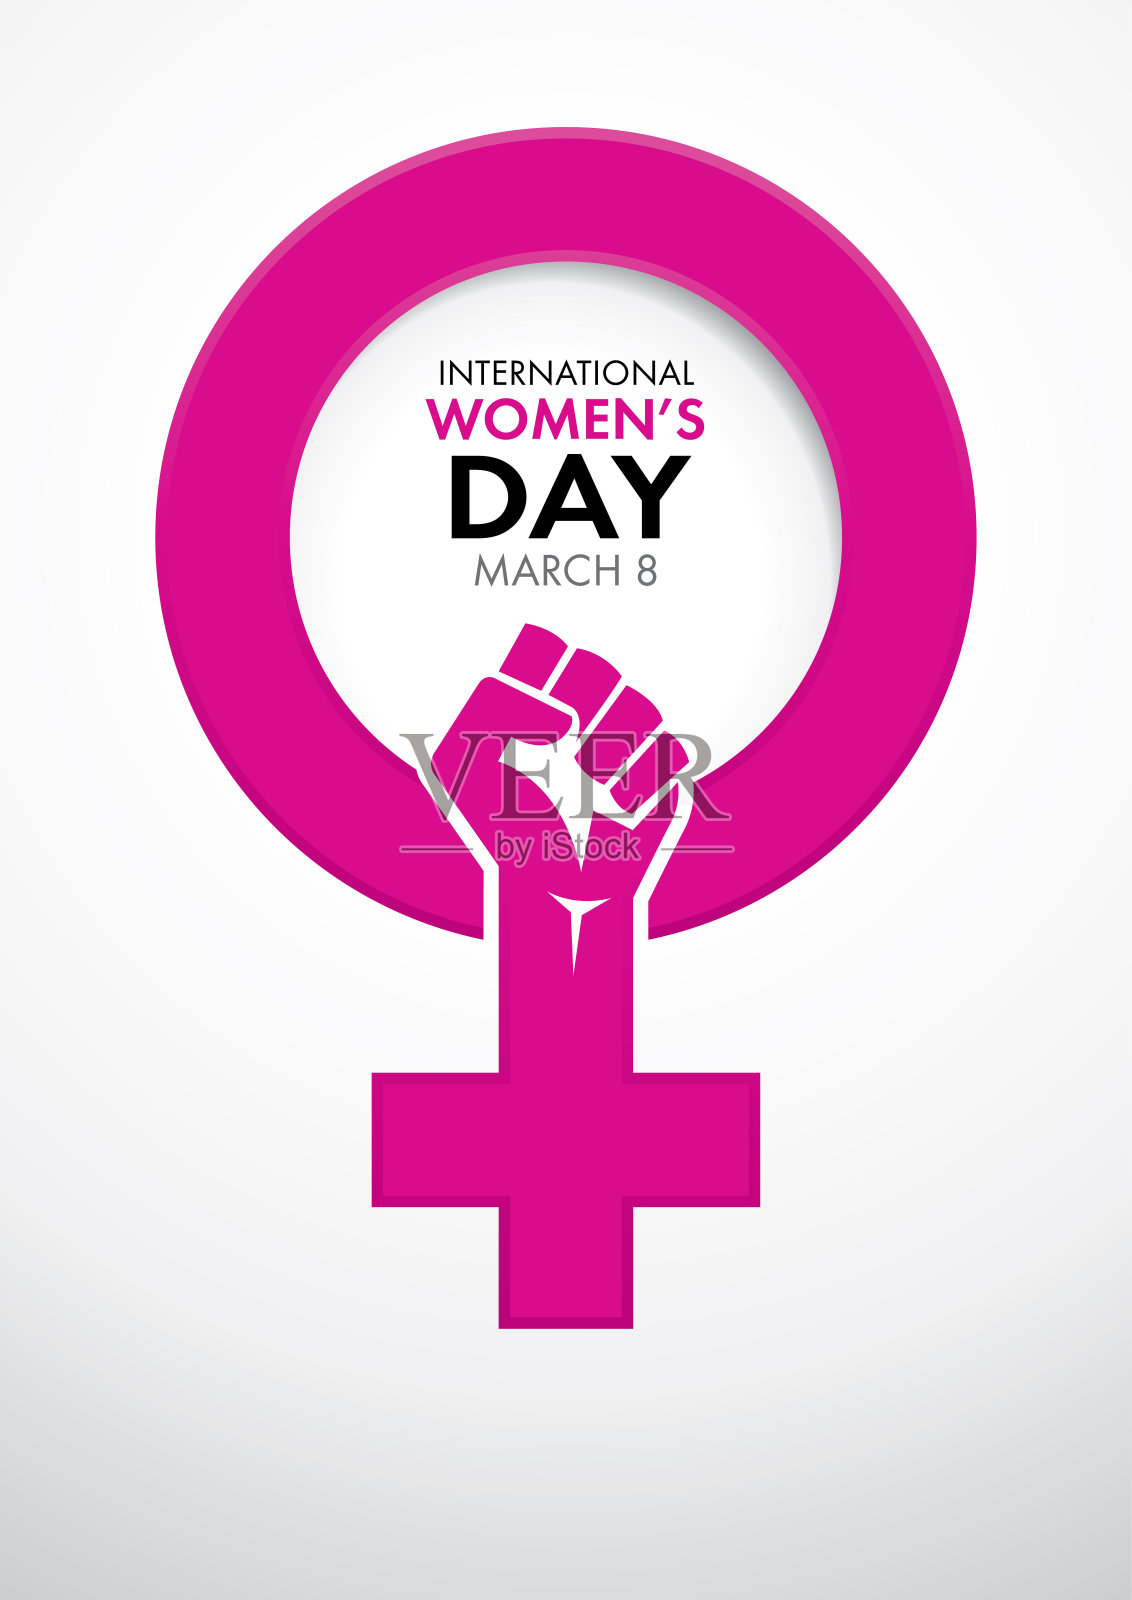 标题里面是国际妇女节的象征，里面是用粉红色的女人握紧拳头的象征设计模板素材